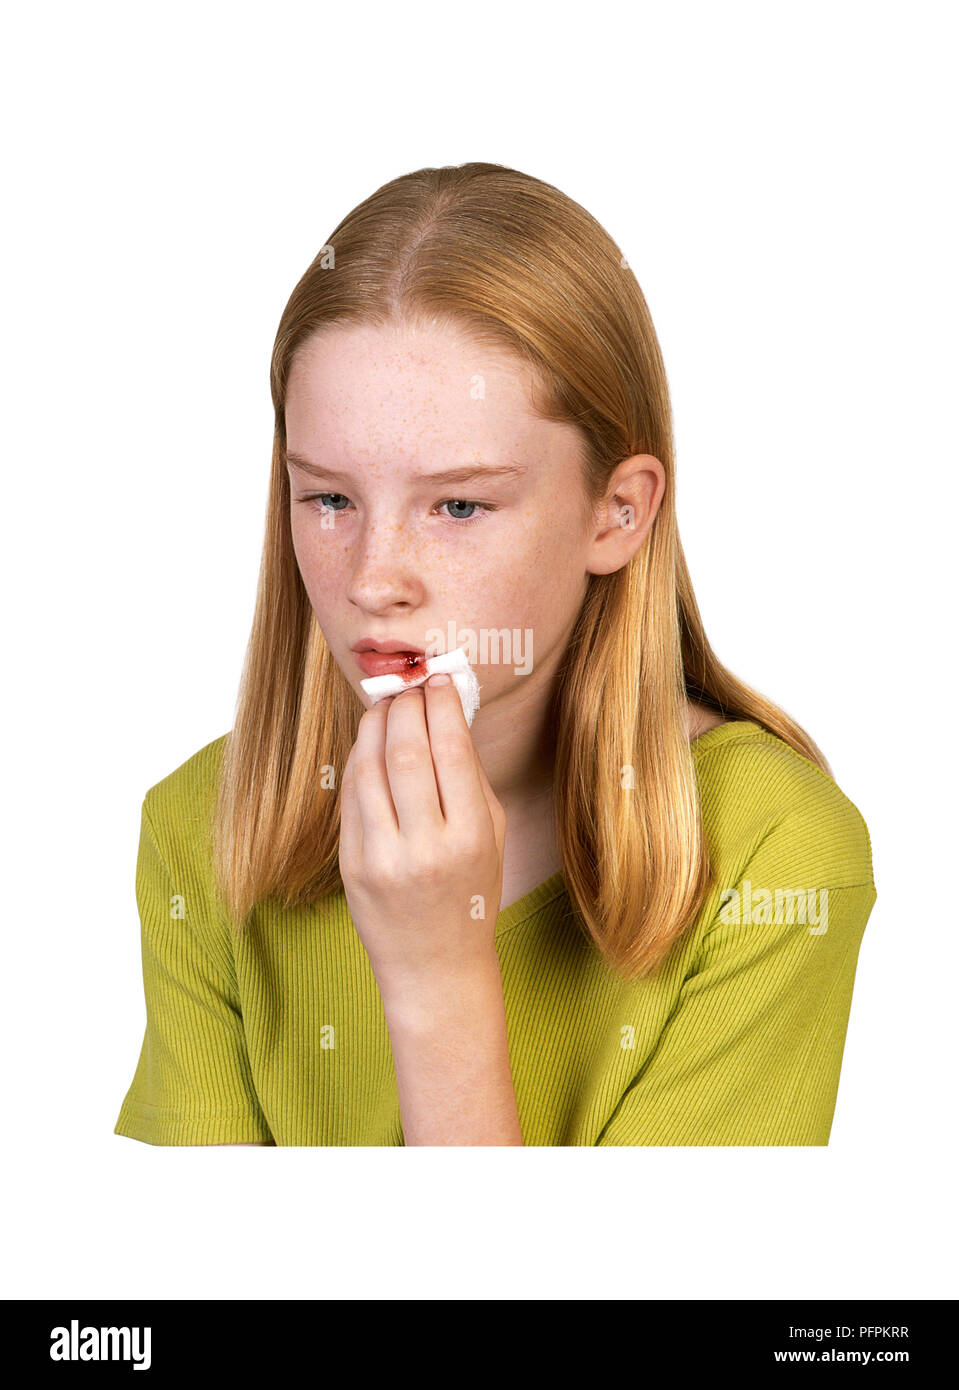 Girl holding tissue on bleeding lips Stock Photo